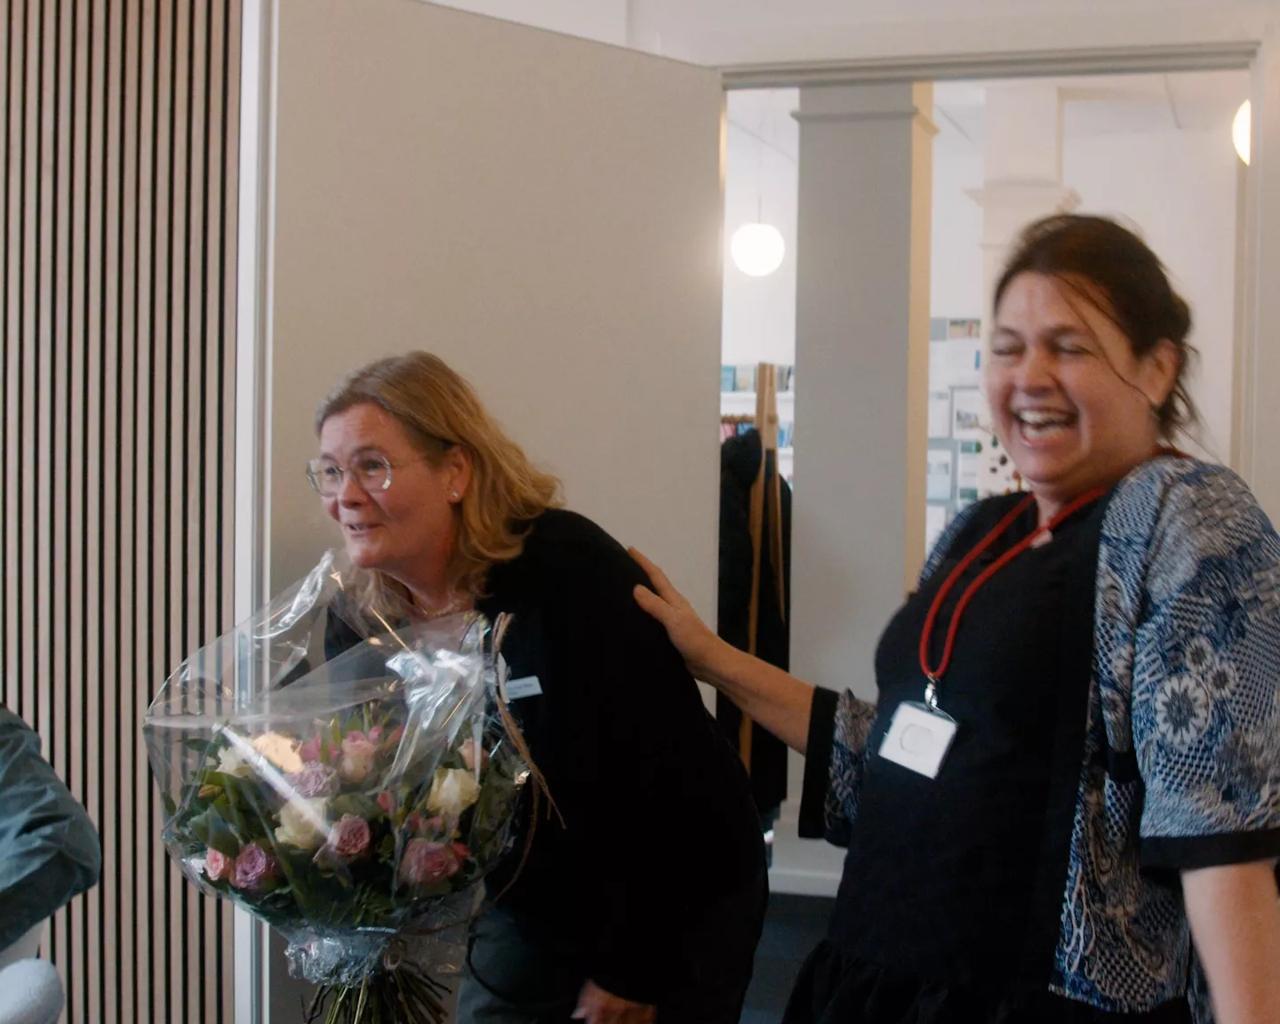 Jeg har aldrig prøvet sådan noget i mit arbejdsliv. Jeg er meget, meget rørt, og det betyder alt for mig og er en dag, jeg aldrig nogensinde vil glemme, siger Anne Krogh Nielsen. Til højre i billedet ses Birgitte Nør-Hansen, leder af kræftrådgivningen.